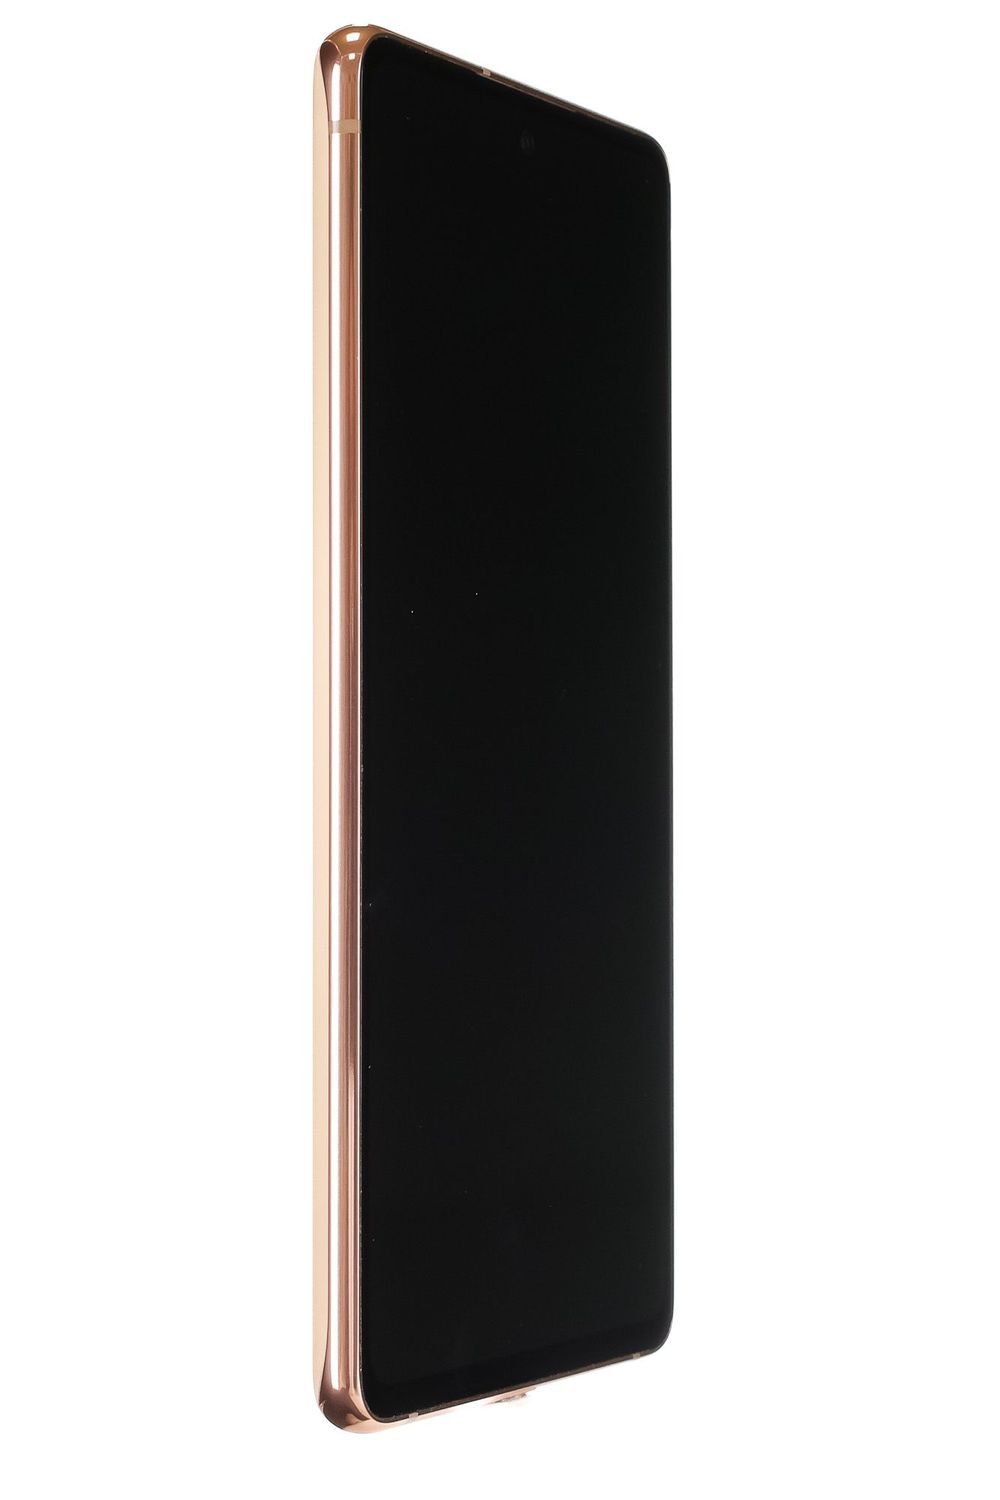 Mobiltelefon Samsung Galaxy S20 FE, Cloud Orange, 256 GB, Foarte Bun